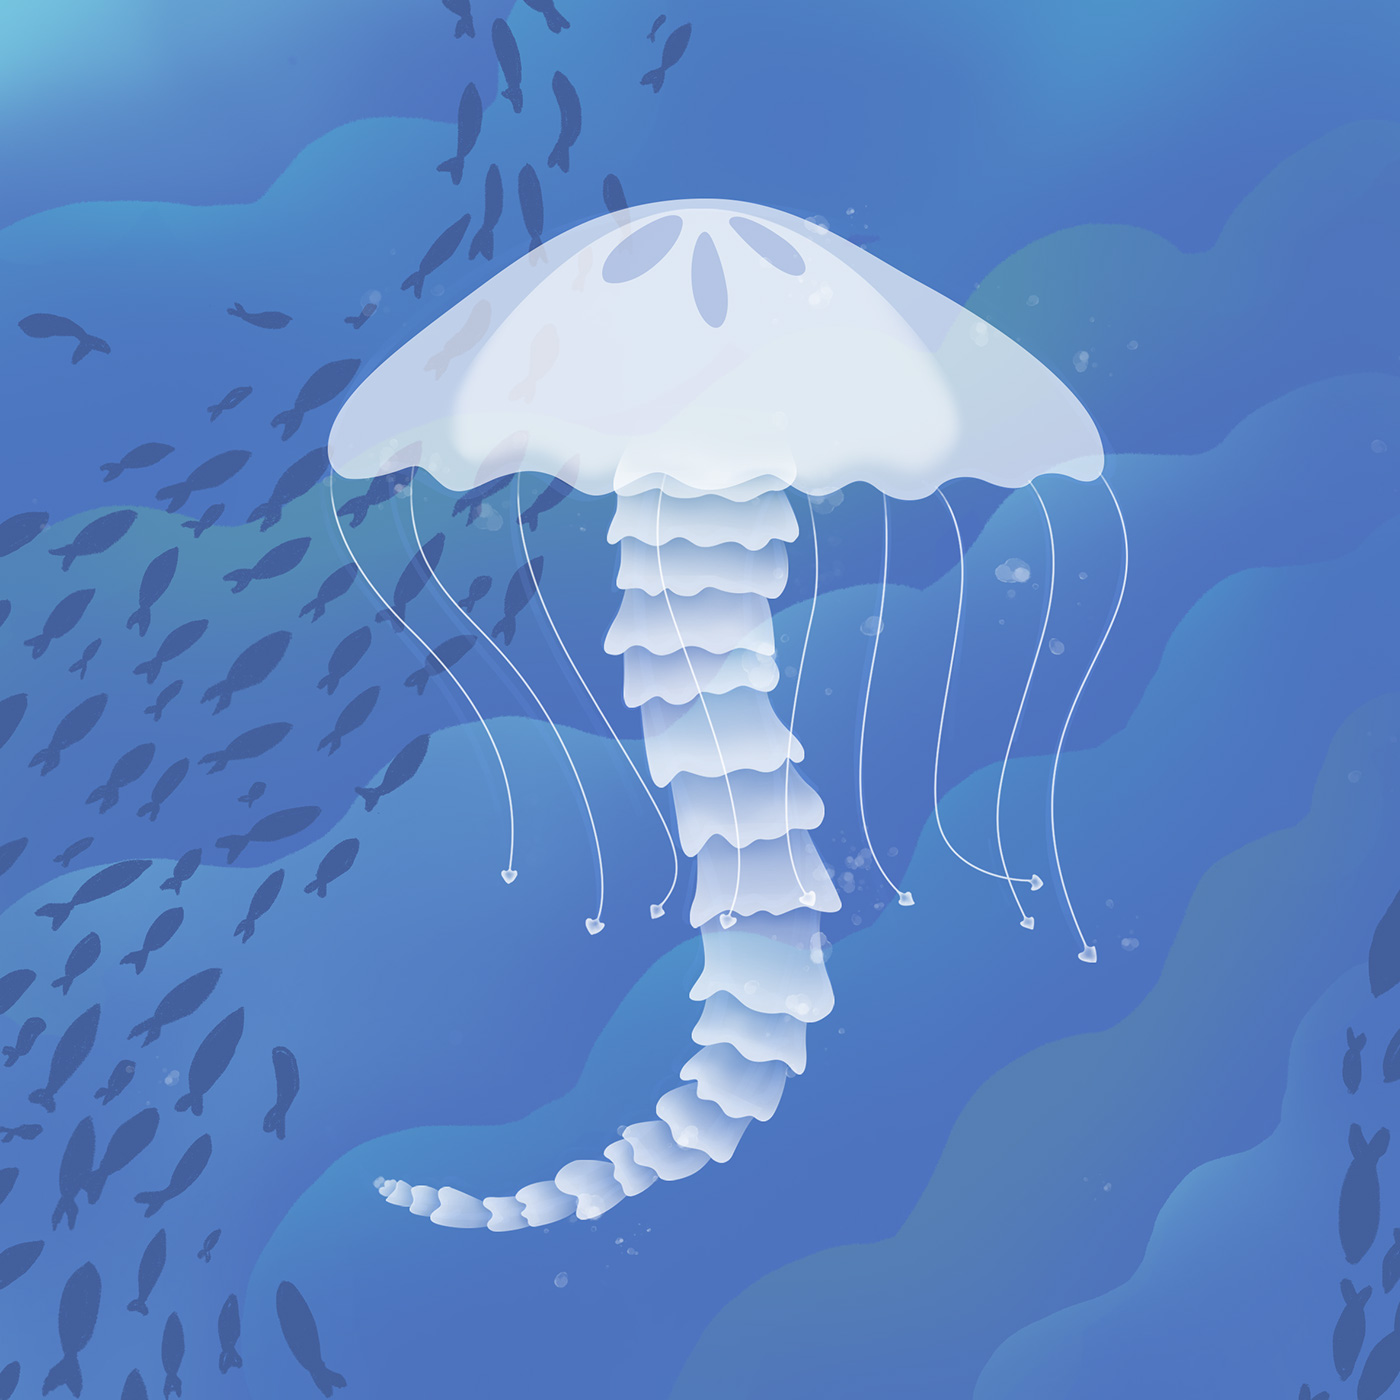 lettering alphabet honey jellyfish Ocean vulcan xylophone nicotene cigarette type